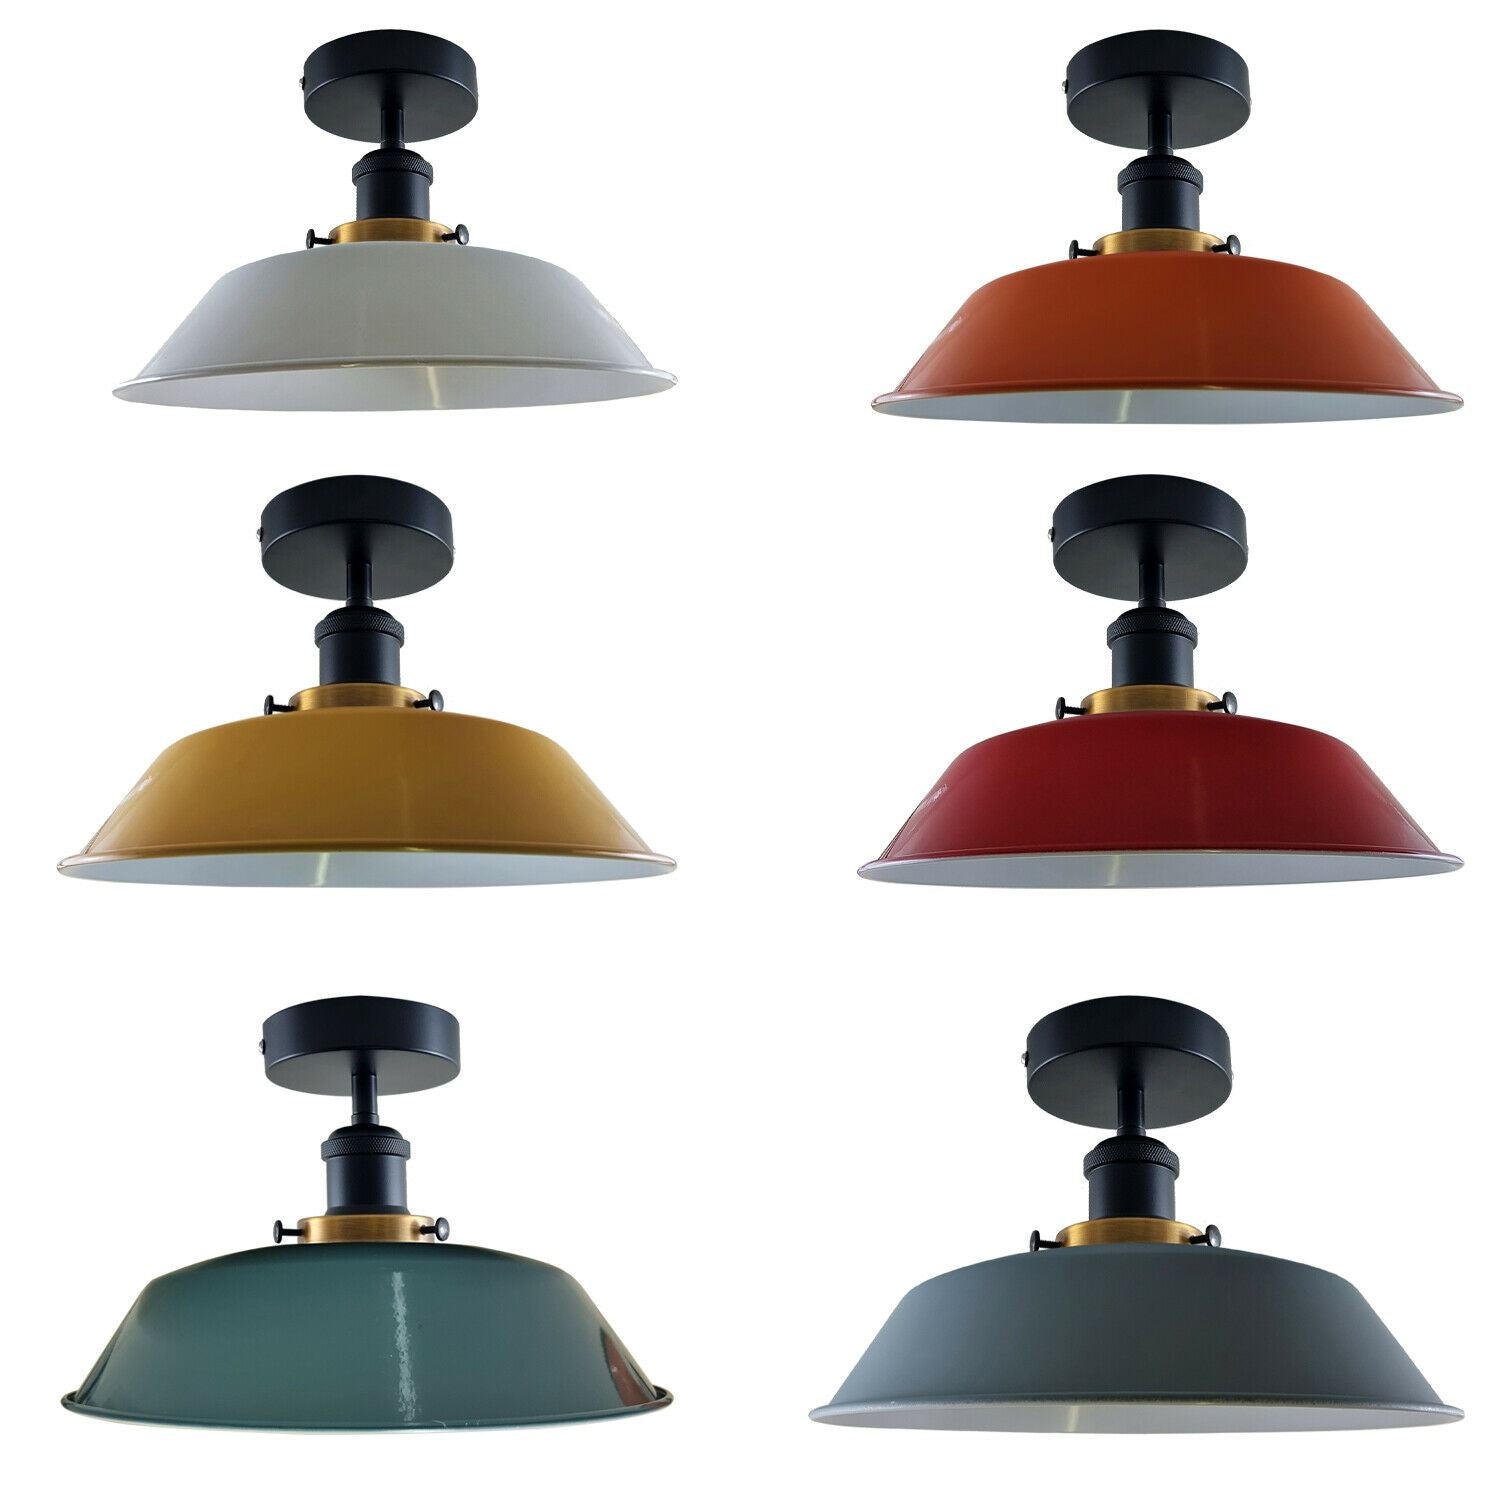 Modern Industrial Ceiling Light Fitting Flush Mount Light Metal Shade~1228 - LEDSone UK Ltd